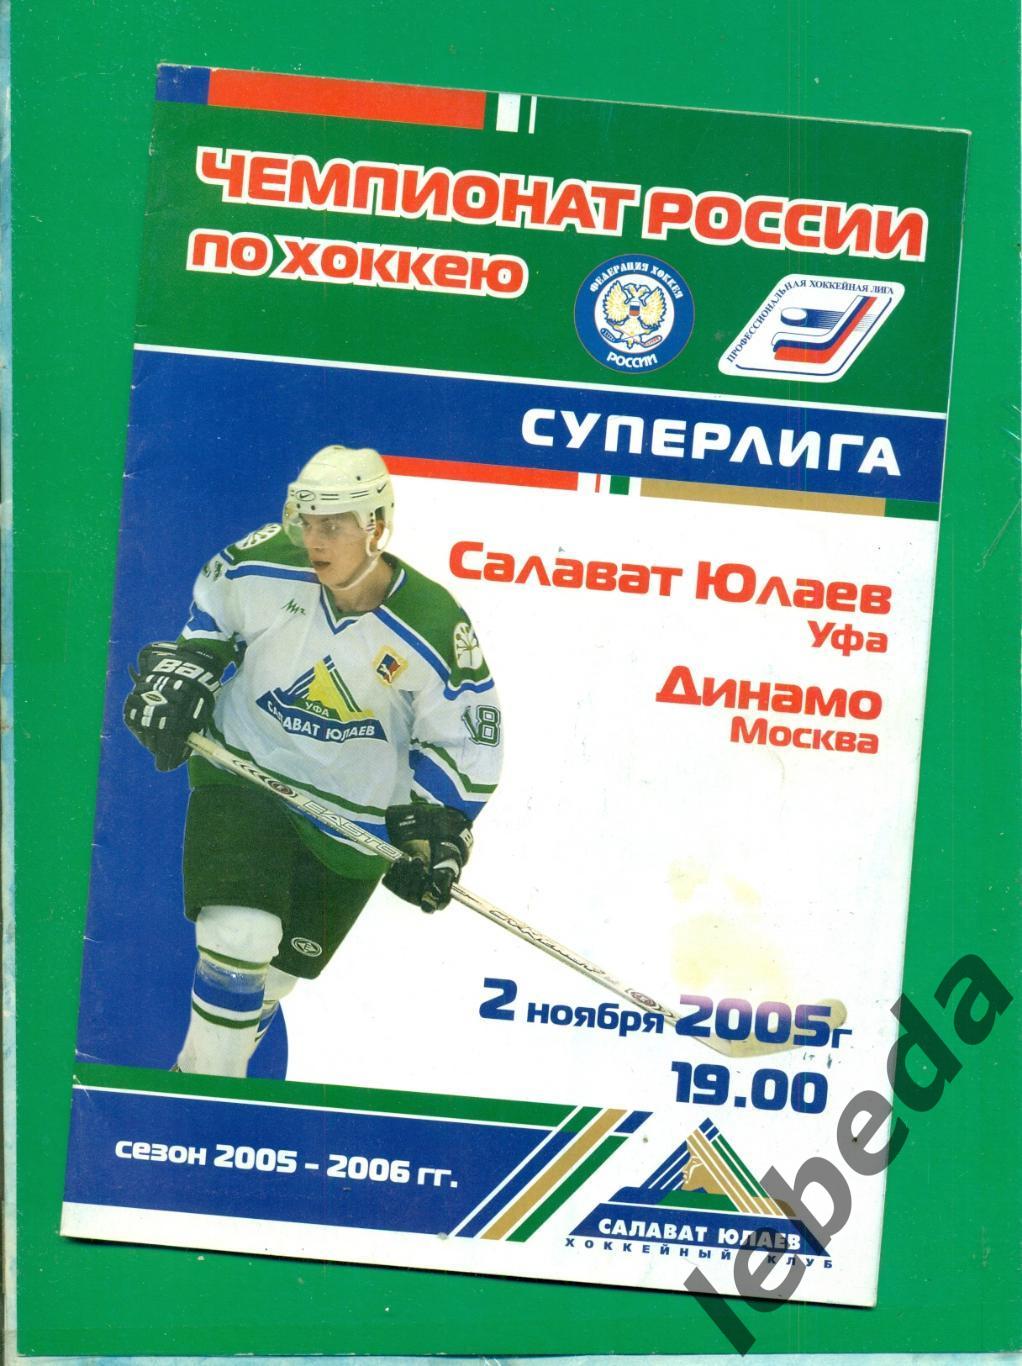 Салават Юлаев Уфа - Динамо Москва - 2005 / 2006 год. Суперлига ( 02.11.2005)